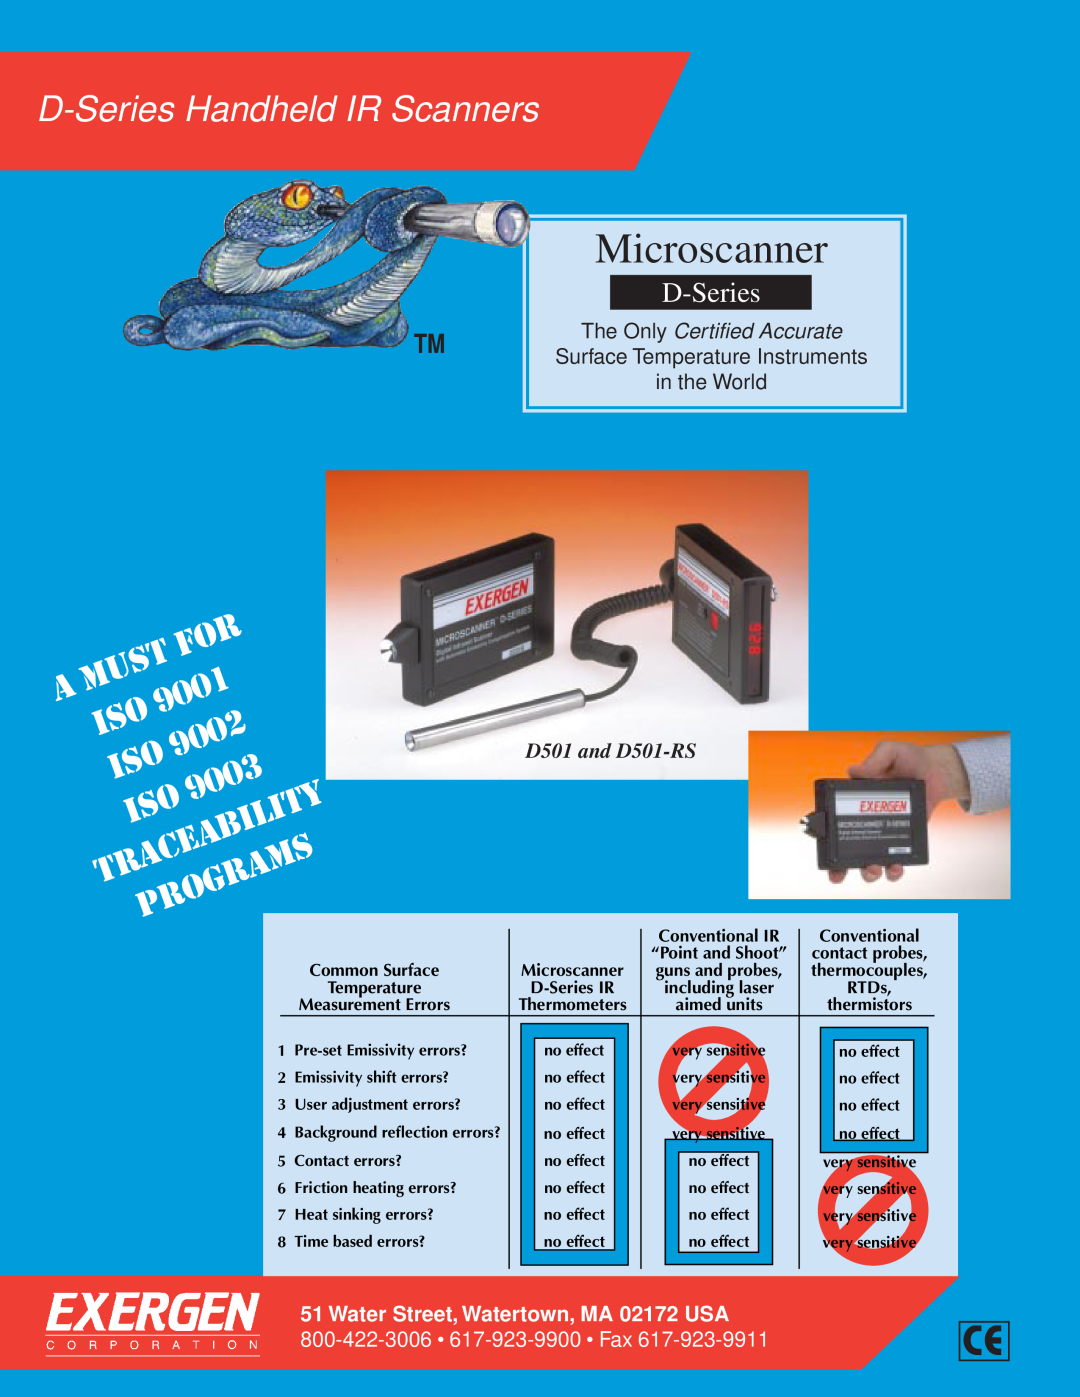 Exergen manual Microscanner, D-Series Handheld IR Scanners, Must, 9001, 9002, 9003, Traceability, Programs 